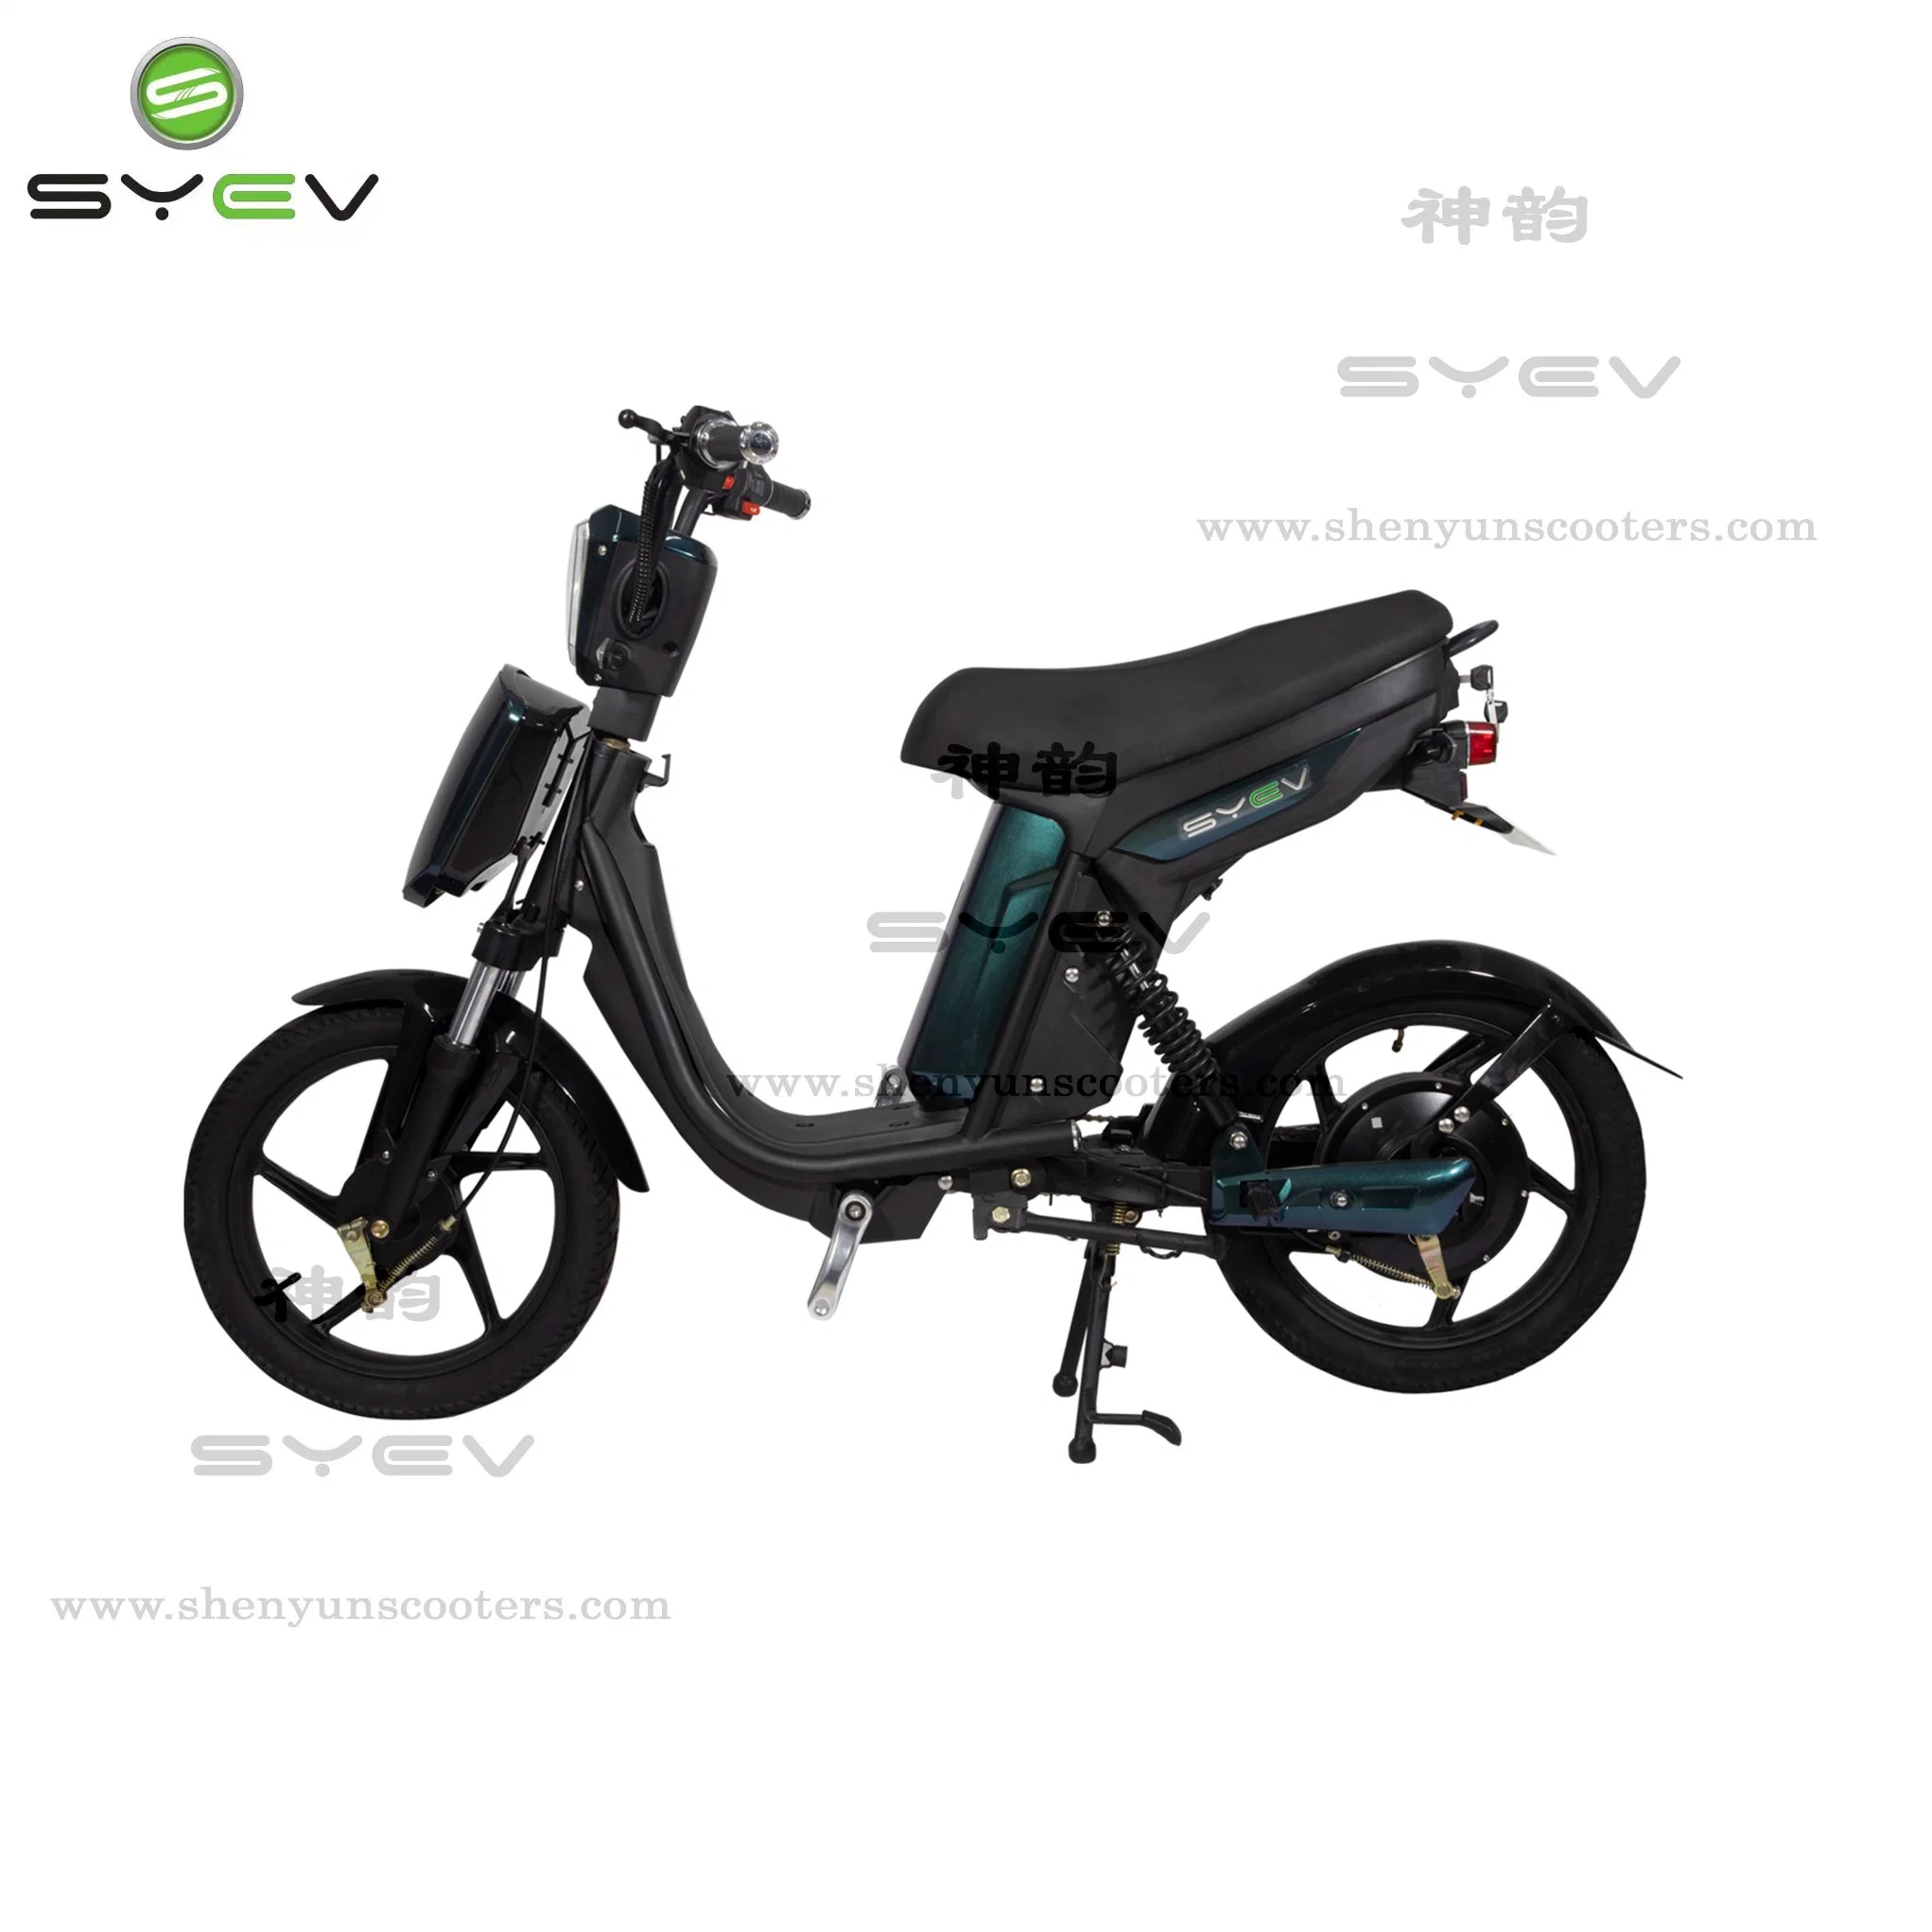 Syev Top Venda Bicicleta Elétrica de Alta Qualidade 350W 2 Rodas Preço Barato E-Scooter